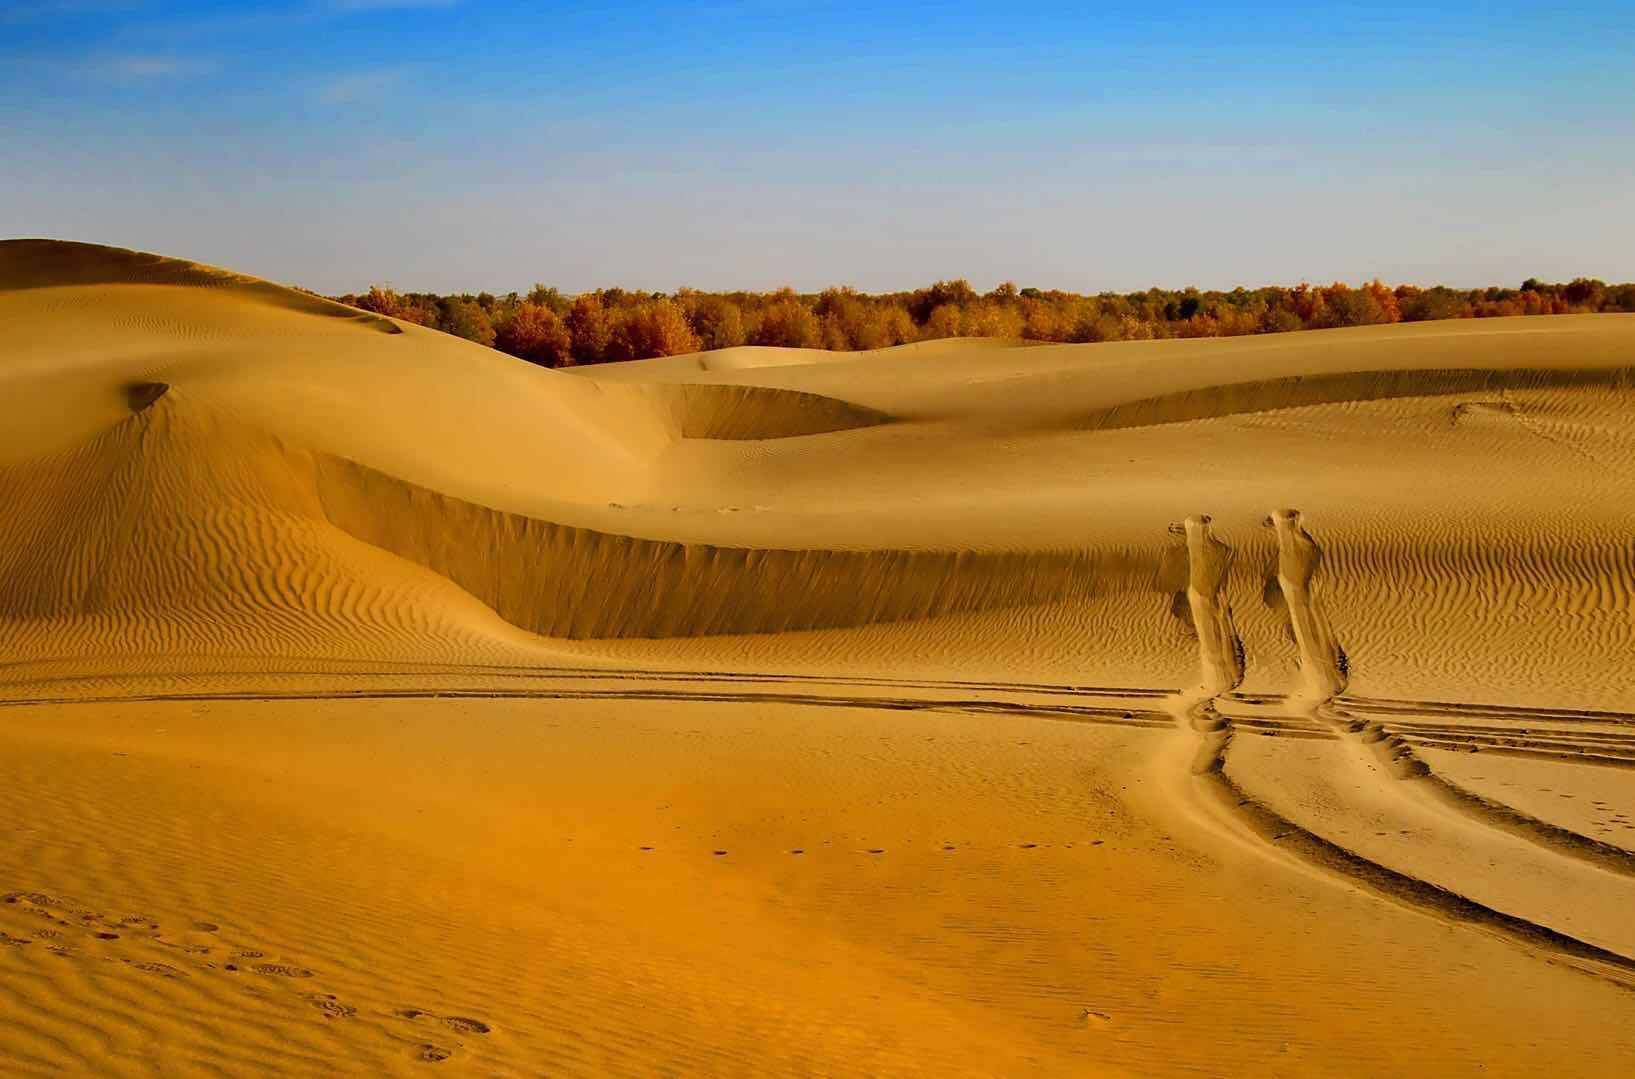 中国沙漠面积130万平方公里,都铺上太阳能板,够国人用